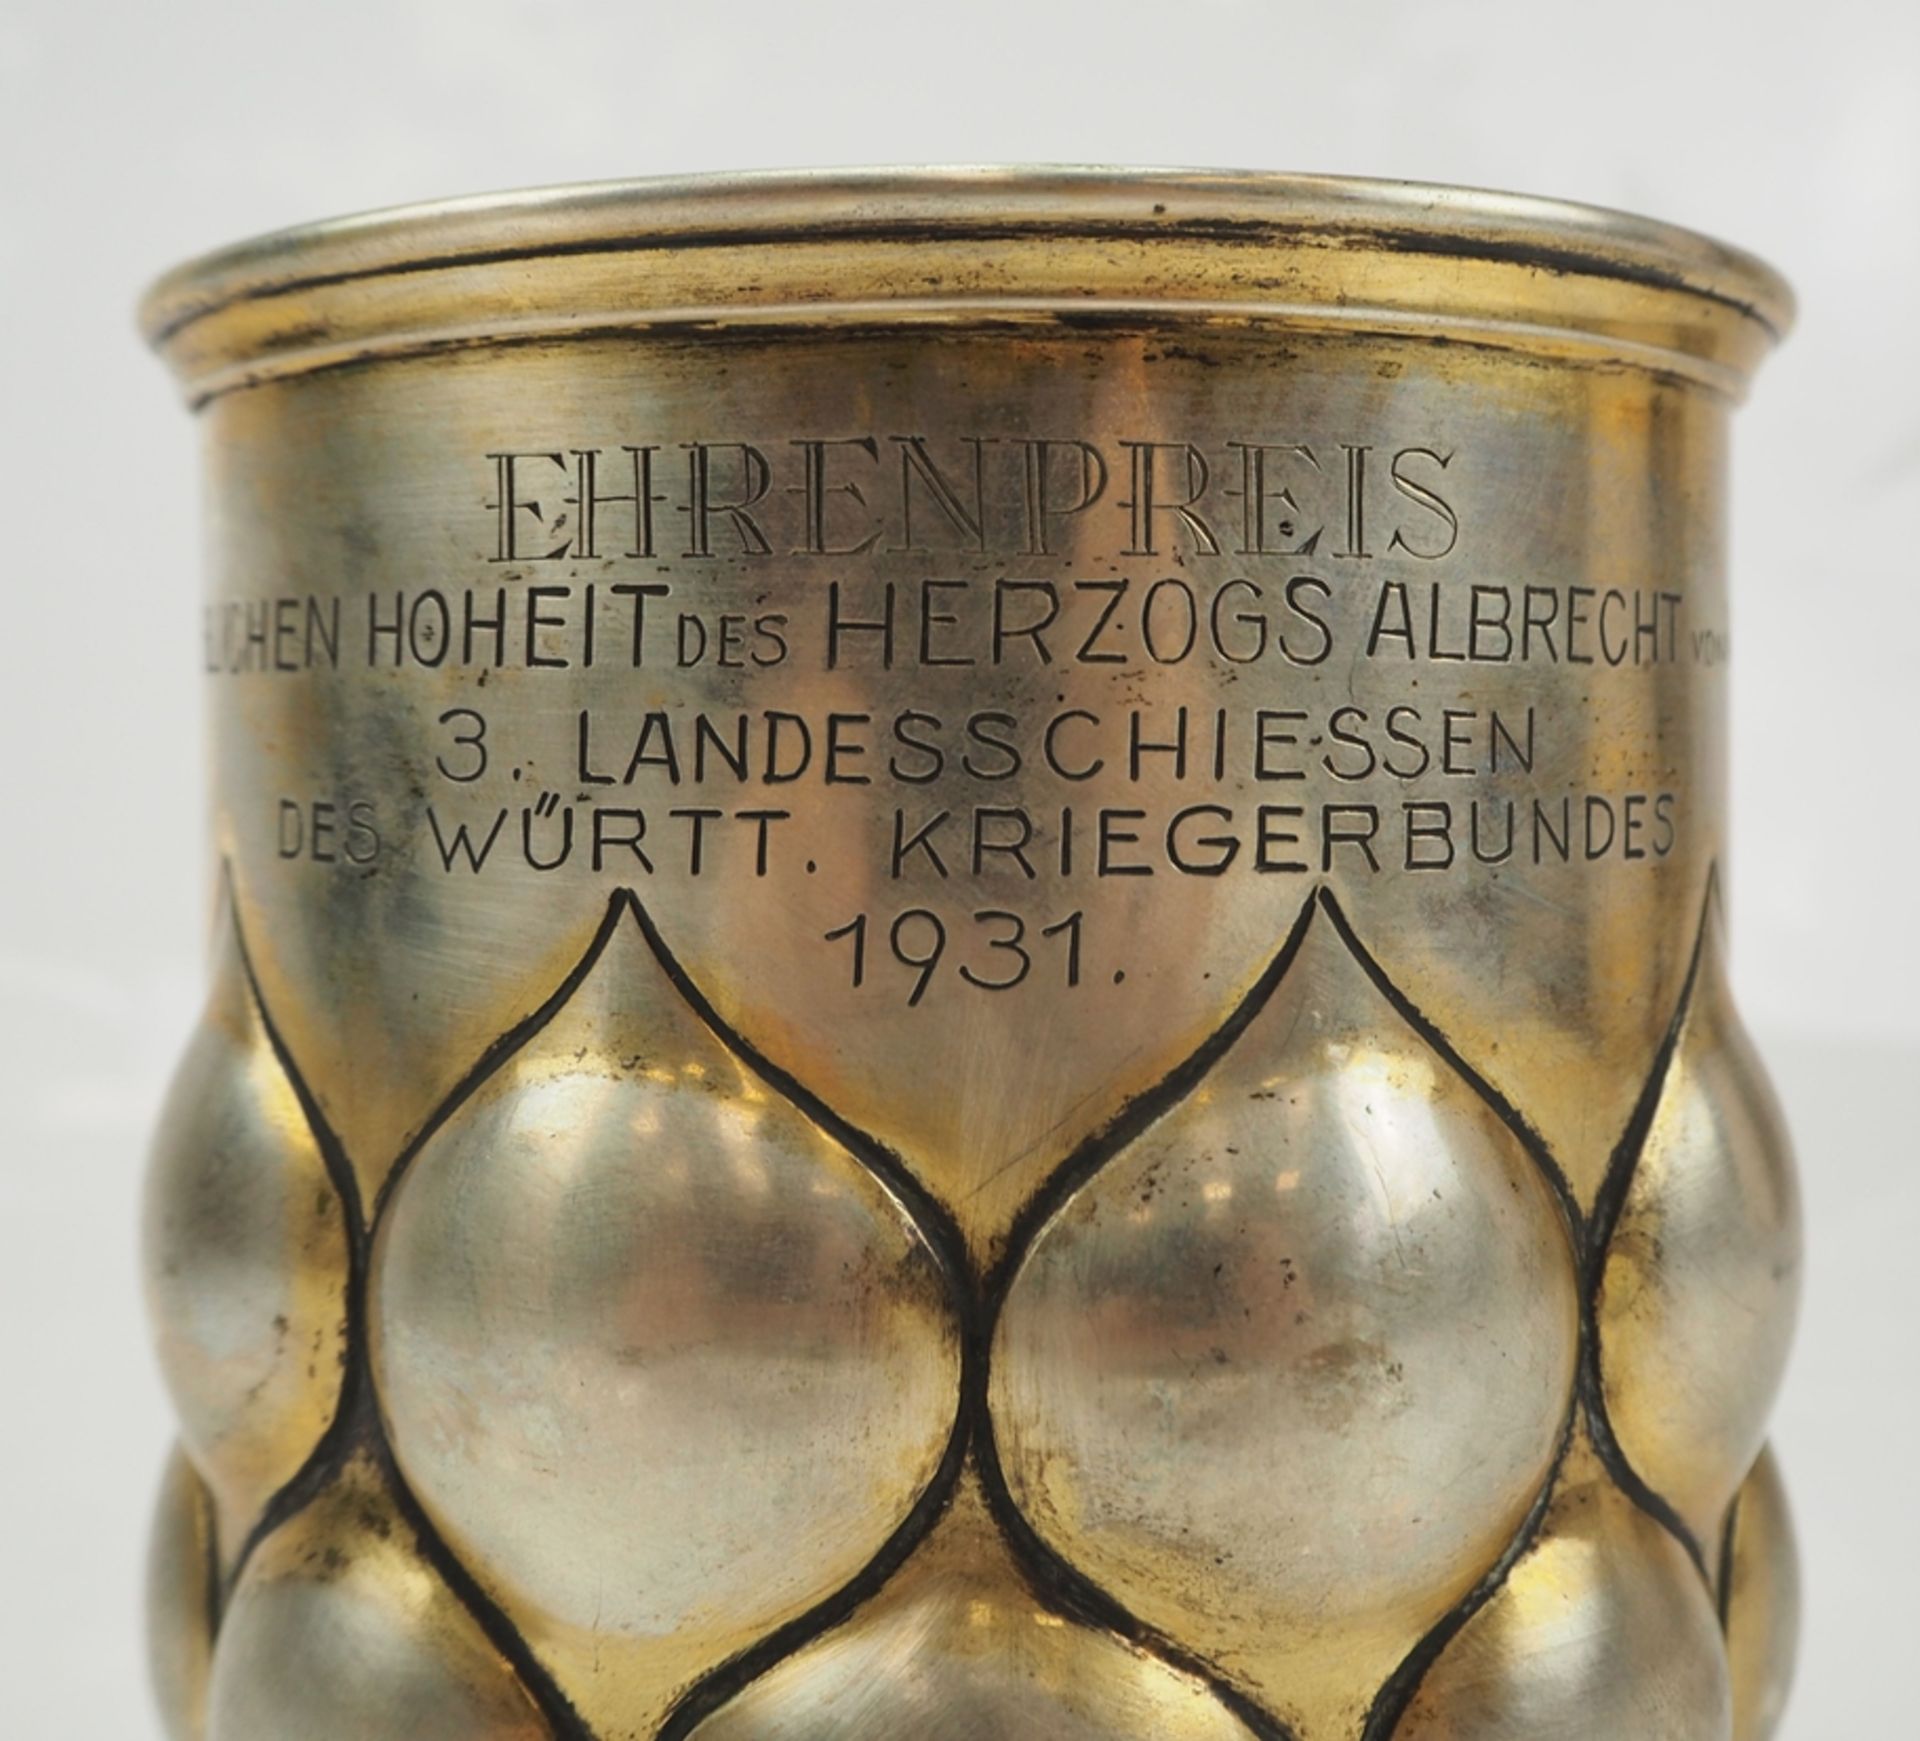 König von Württemberg: Ehrenpreis auf das 3. Landesschiessen des württ. Kriegerbundes 1931 - SILBER - Image 2 of 4